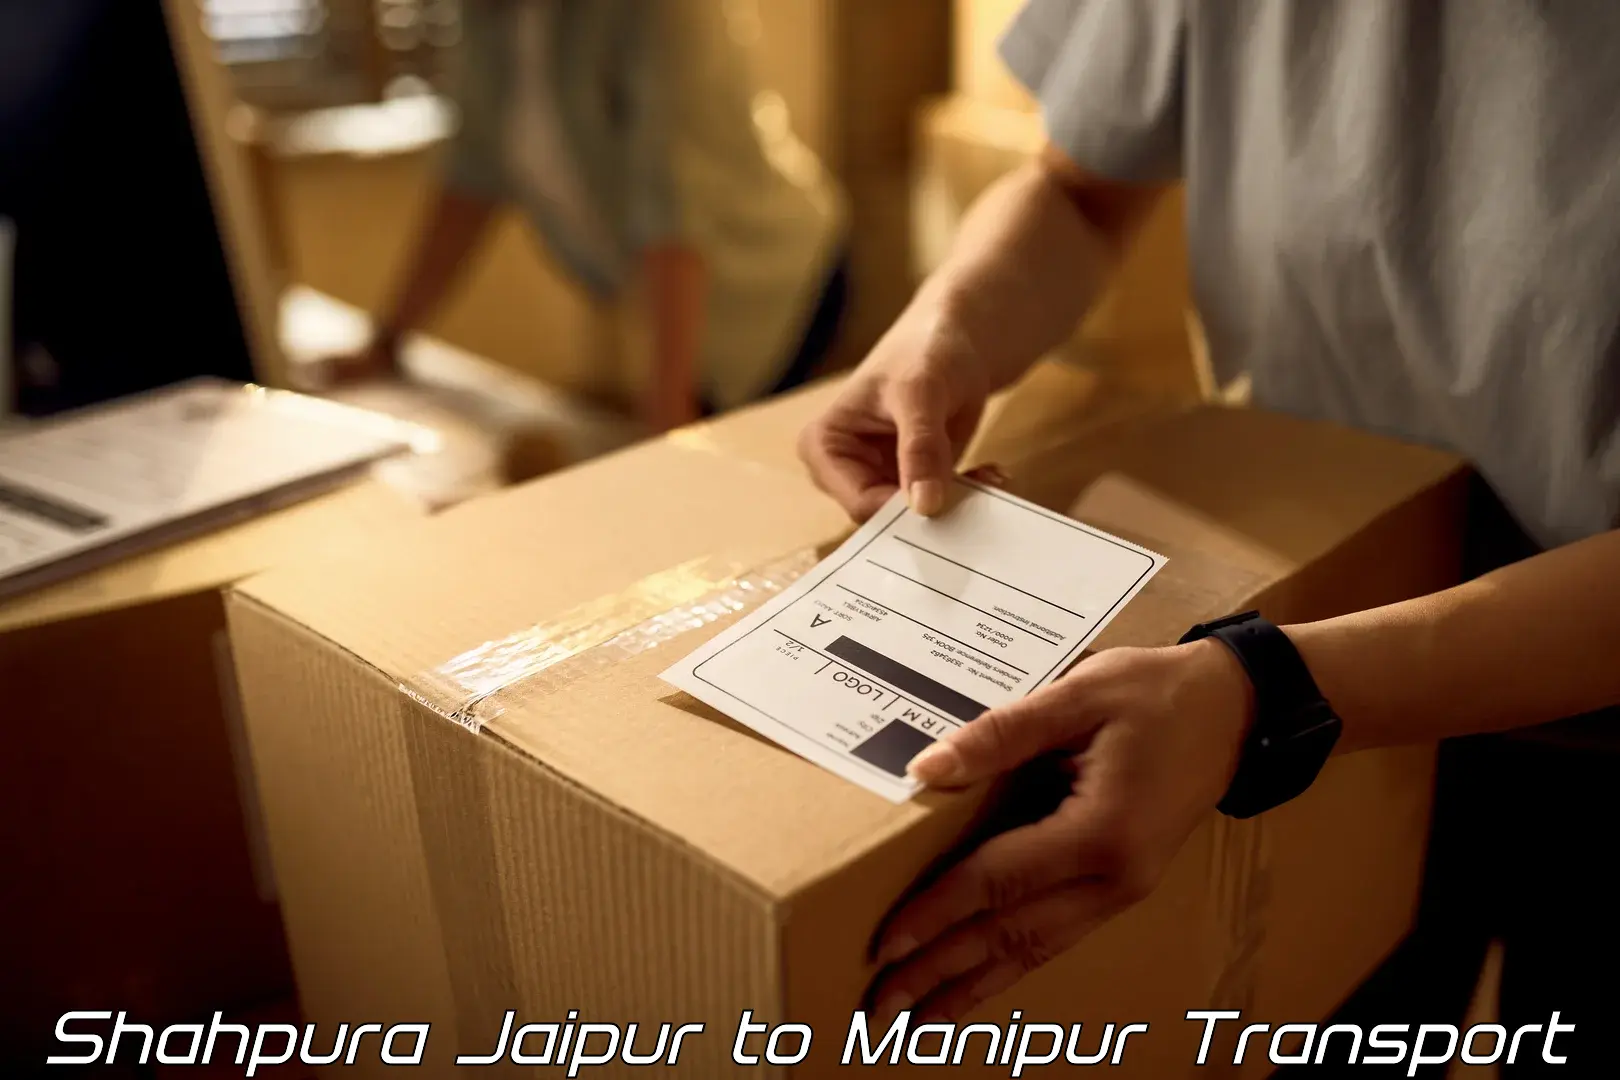 Online transport service Shahpura Jaipur to Imphal